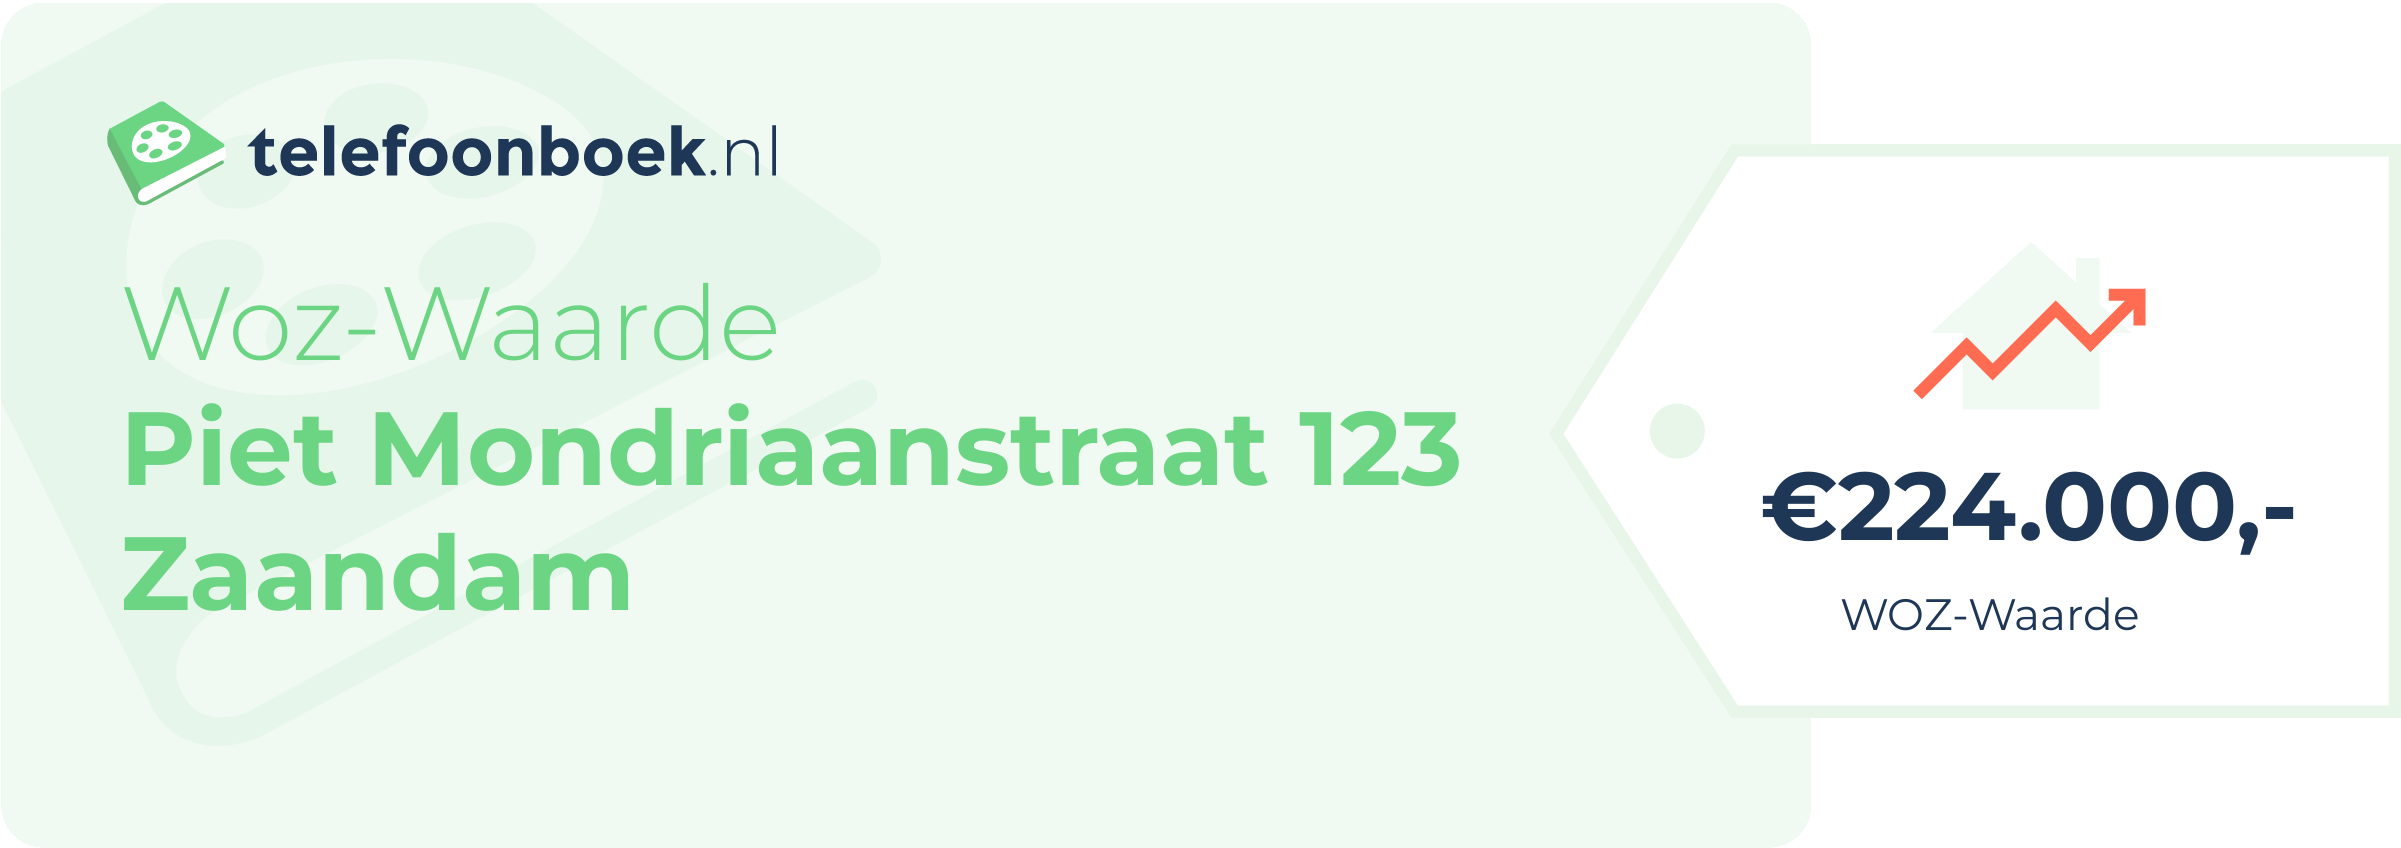 WOZ-waarde Piet Mondriaanstraat 123 Zaandam